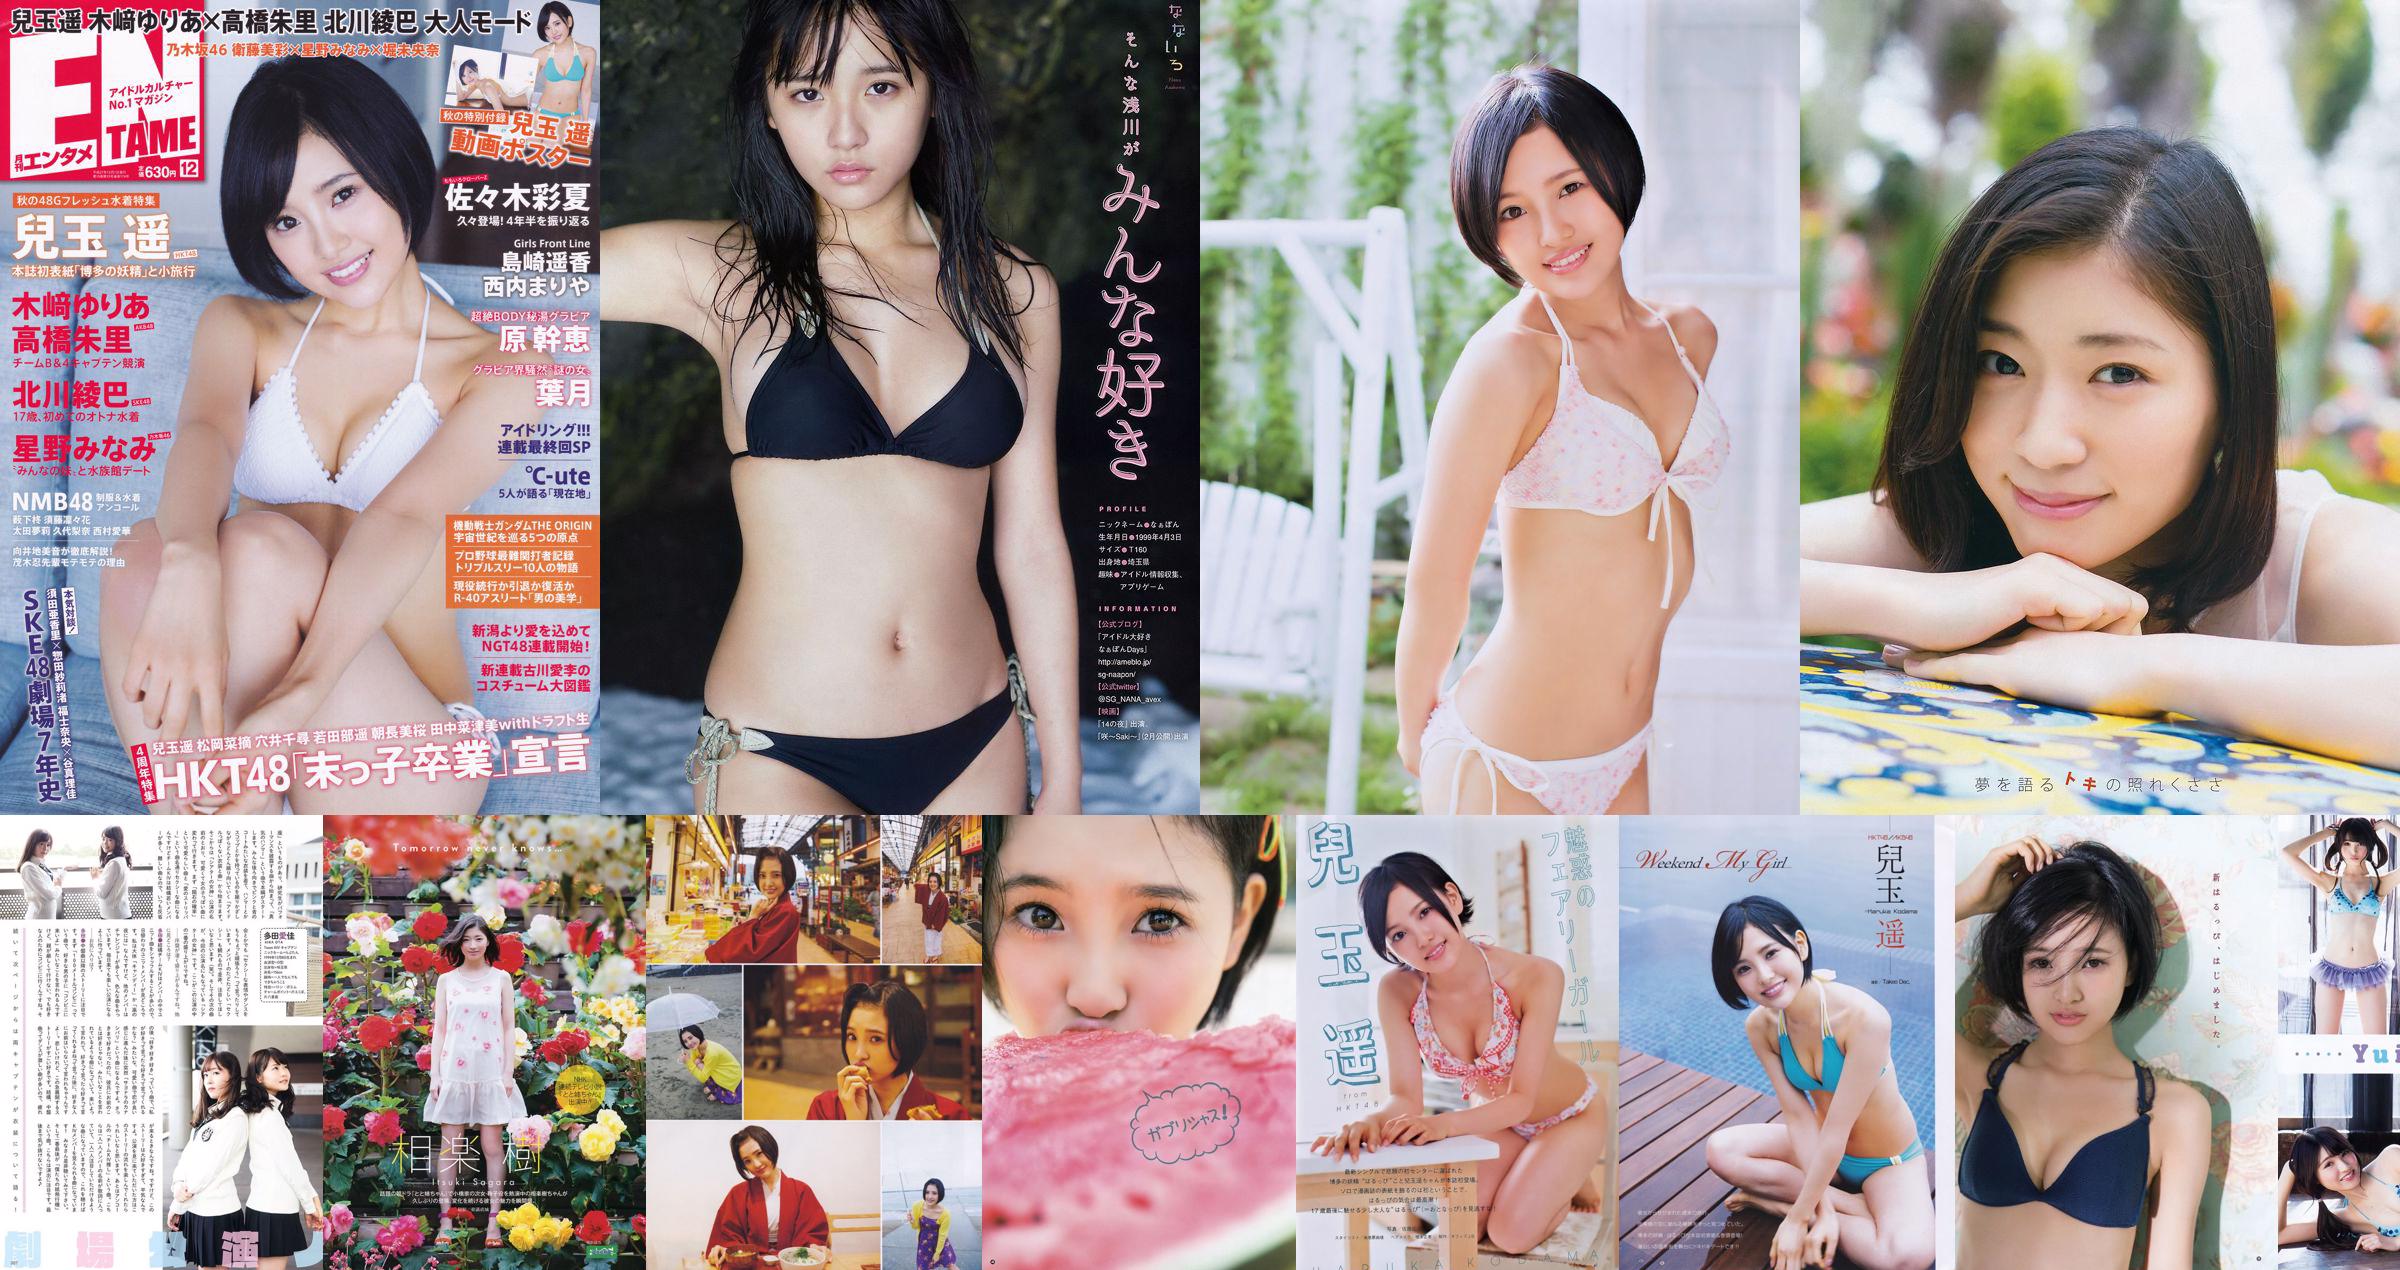 Haruka Kodama Yui Kojina HKT48 [Animal jovem] 2015 No.21 Photo Magazine No.7570e9 Página 20